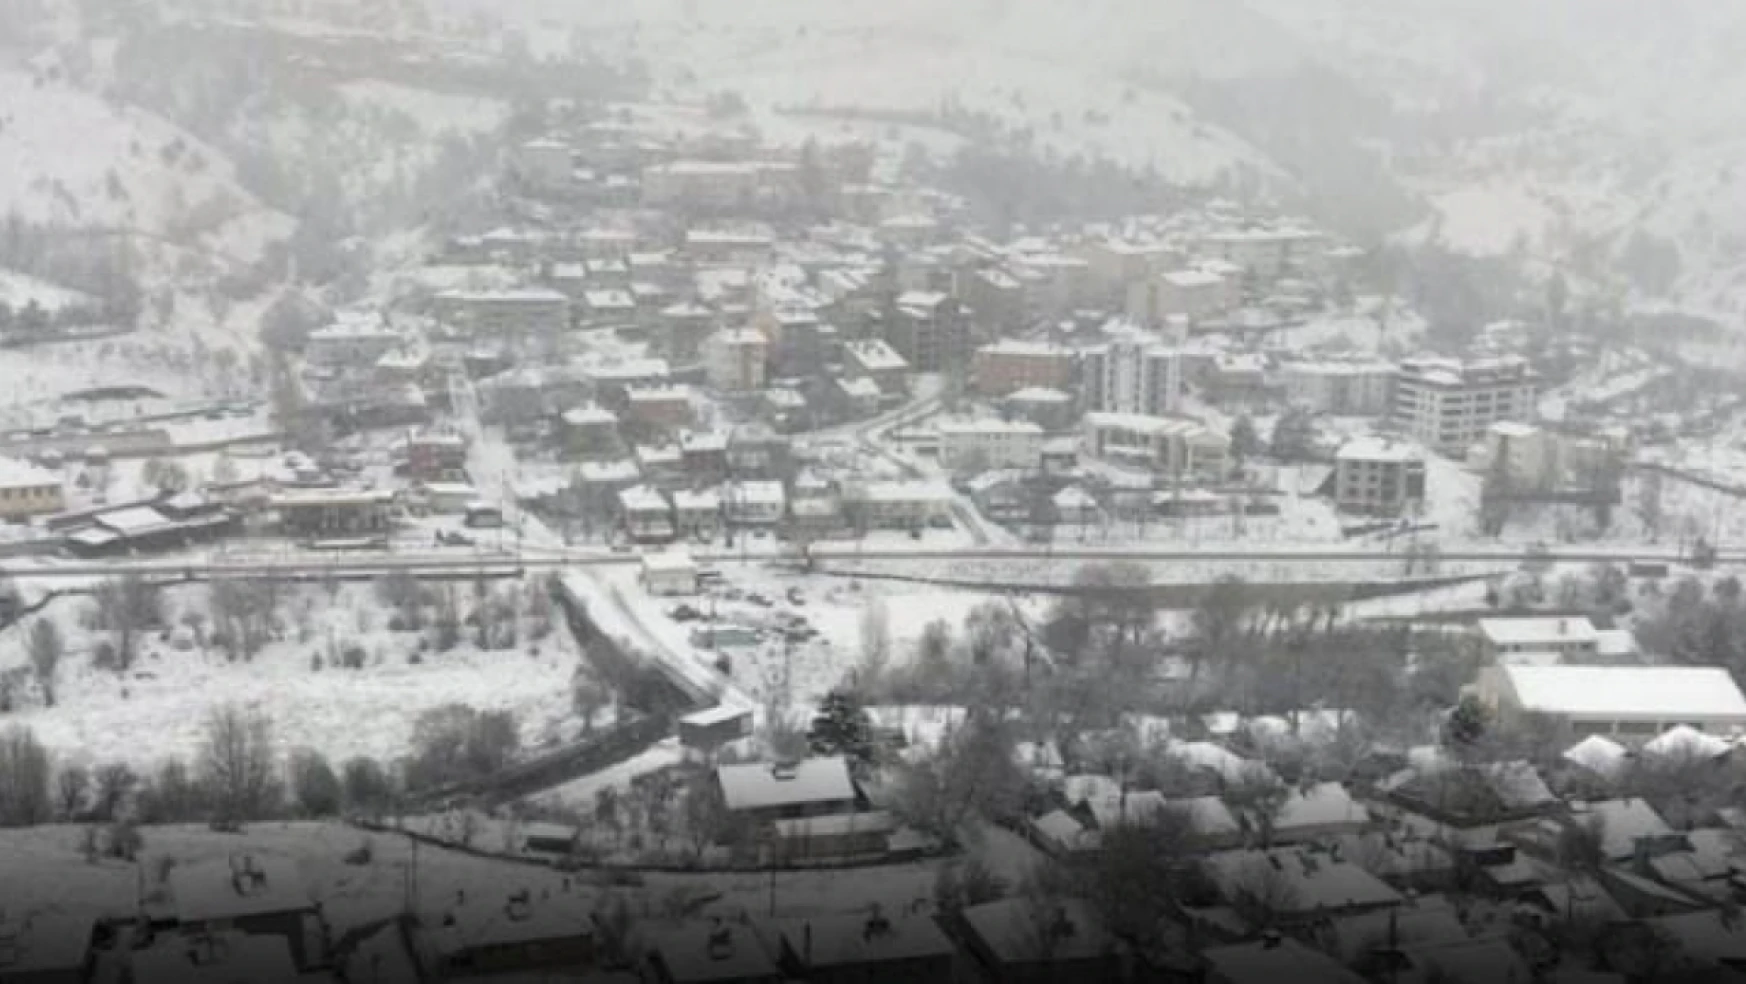 Tunceli-Pertek-Elazığ karayollarında karla mücadele çalışması başlatıldı